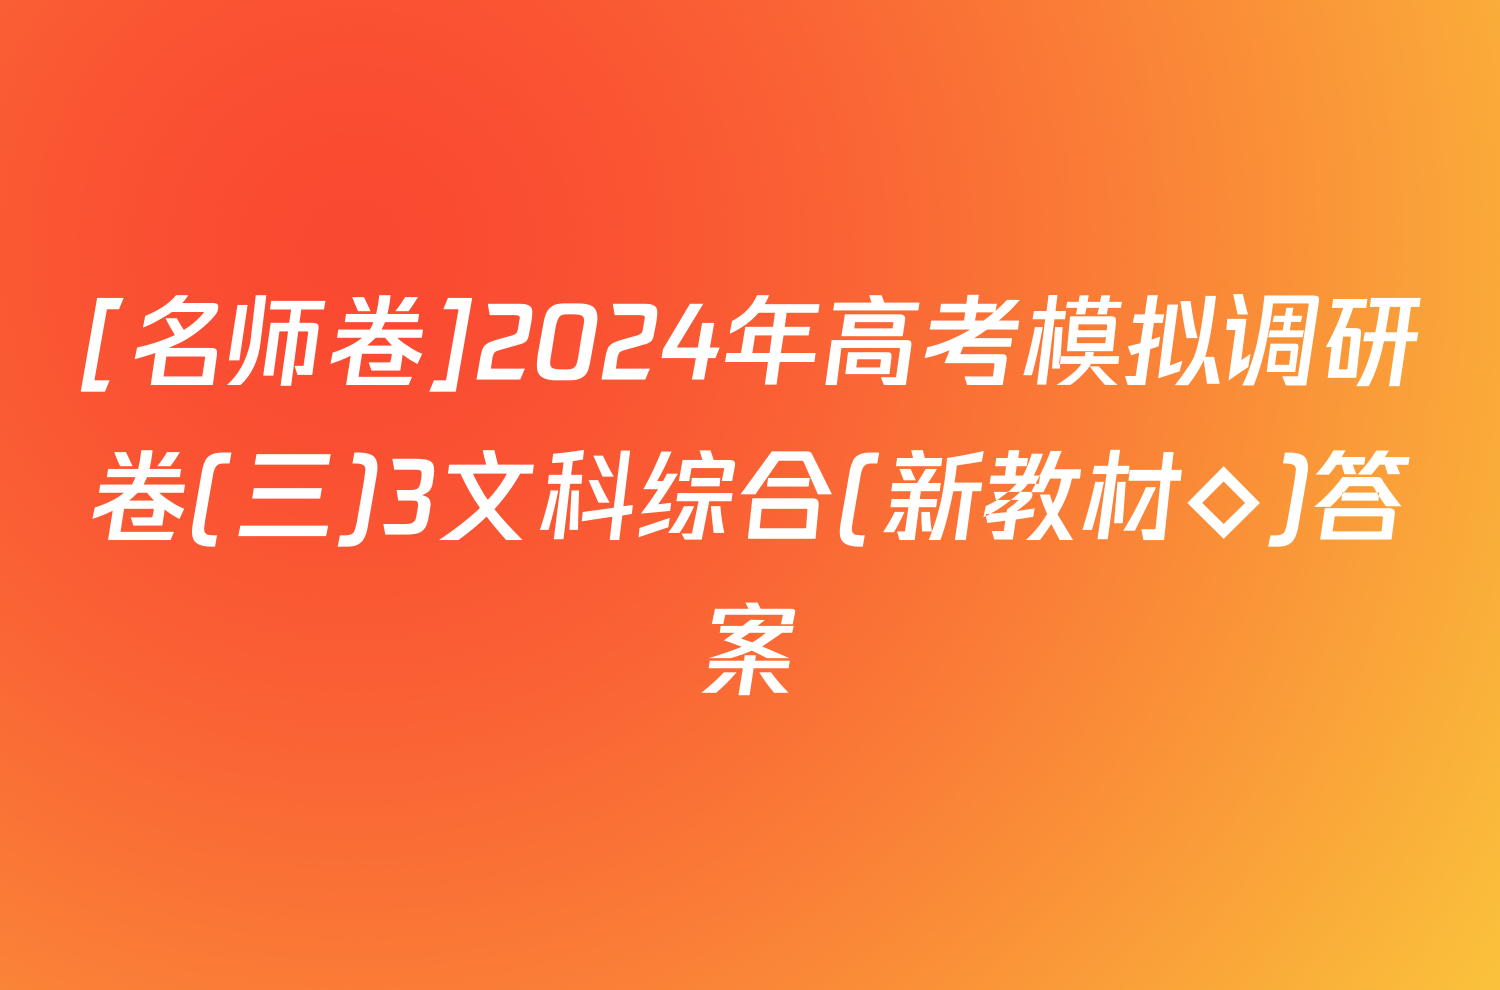 [名师卷]2024年高考模拟调研卷(三)3文科综合(新教材◇)答案